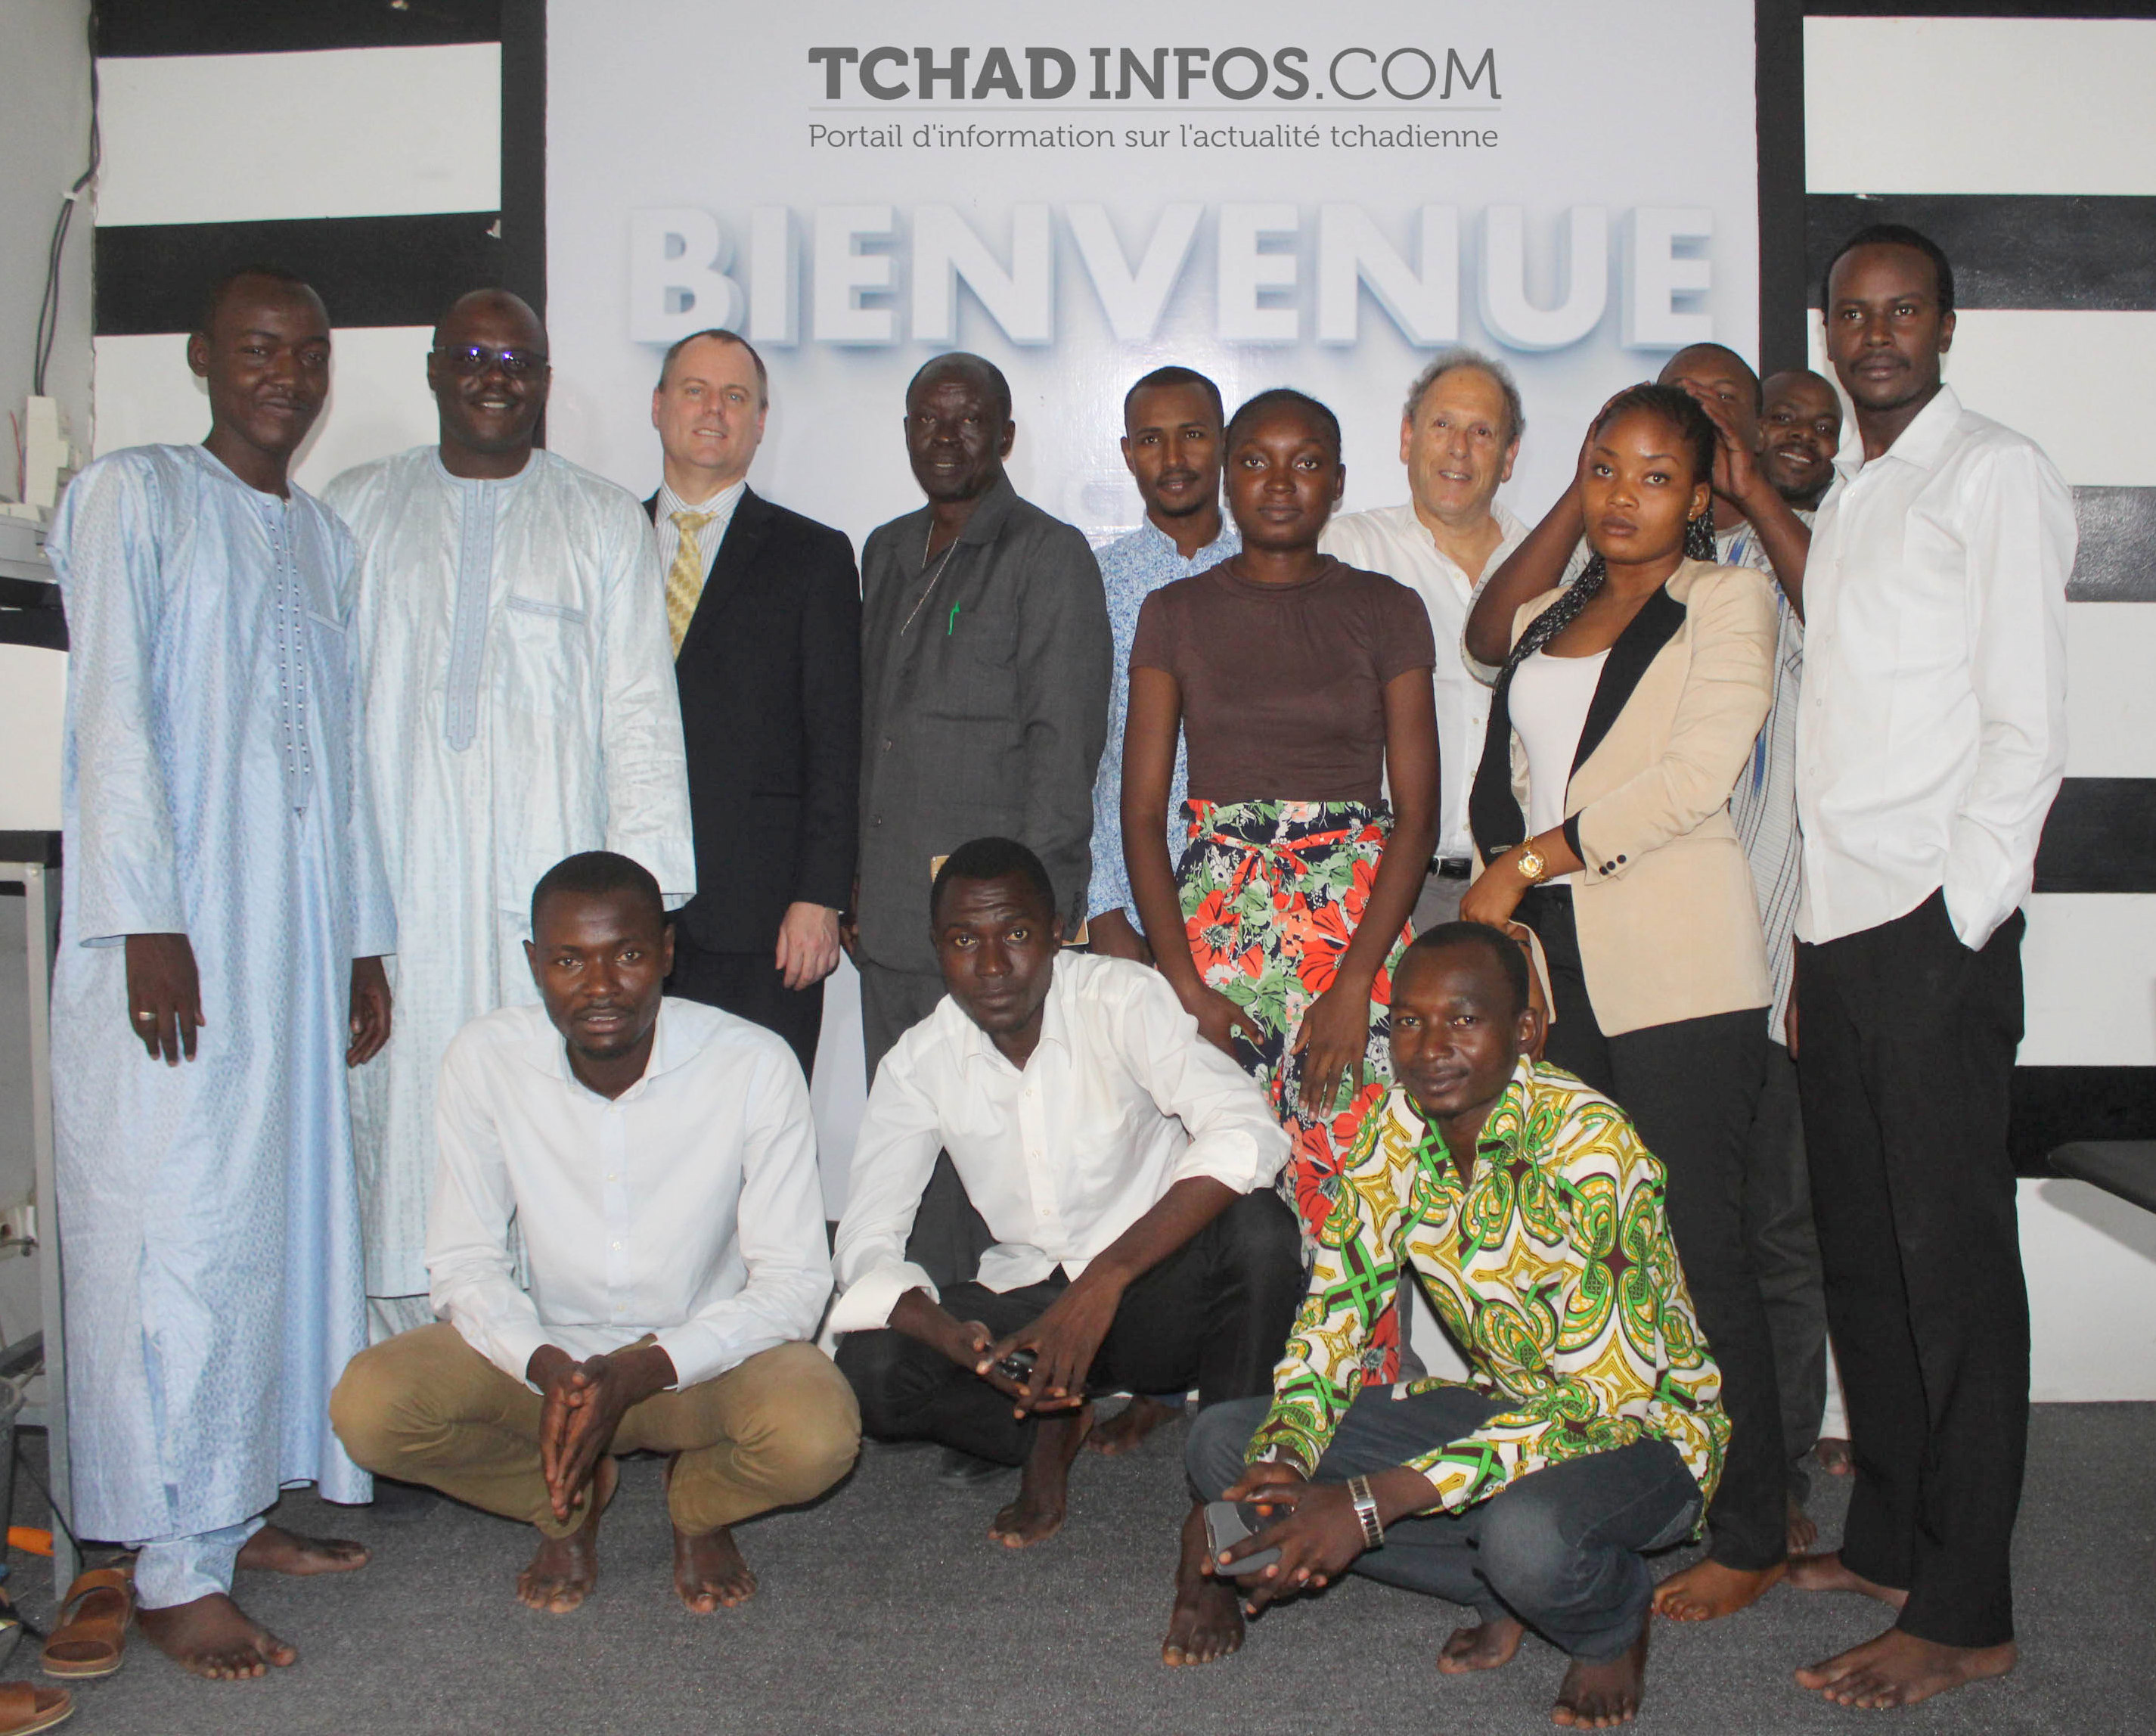 Le service culturel et de presse de l’ambassade des USA au Tchad rend visite à la rédaction de Tchadinfos.com